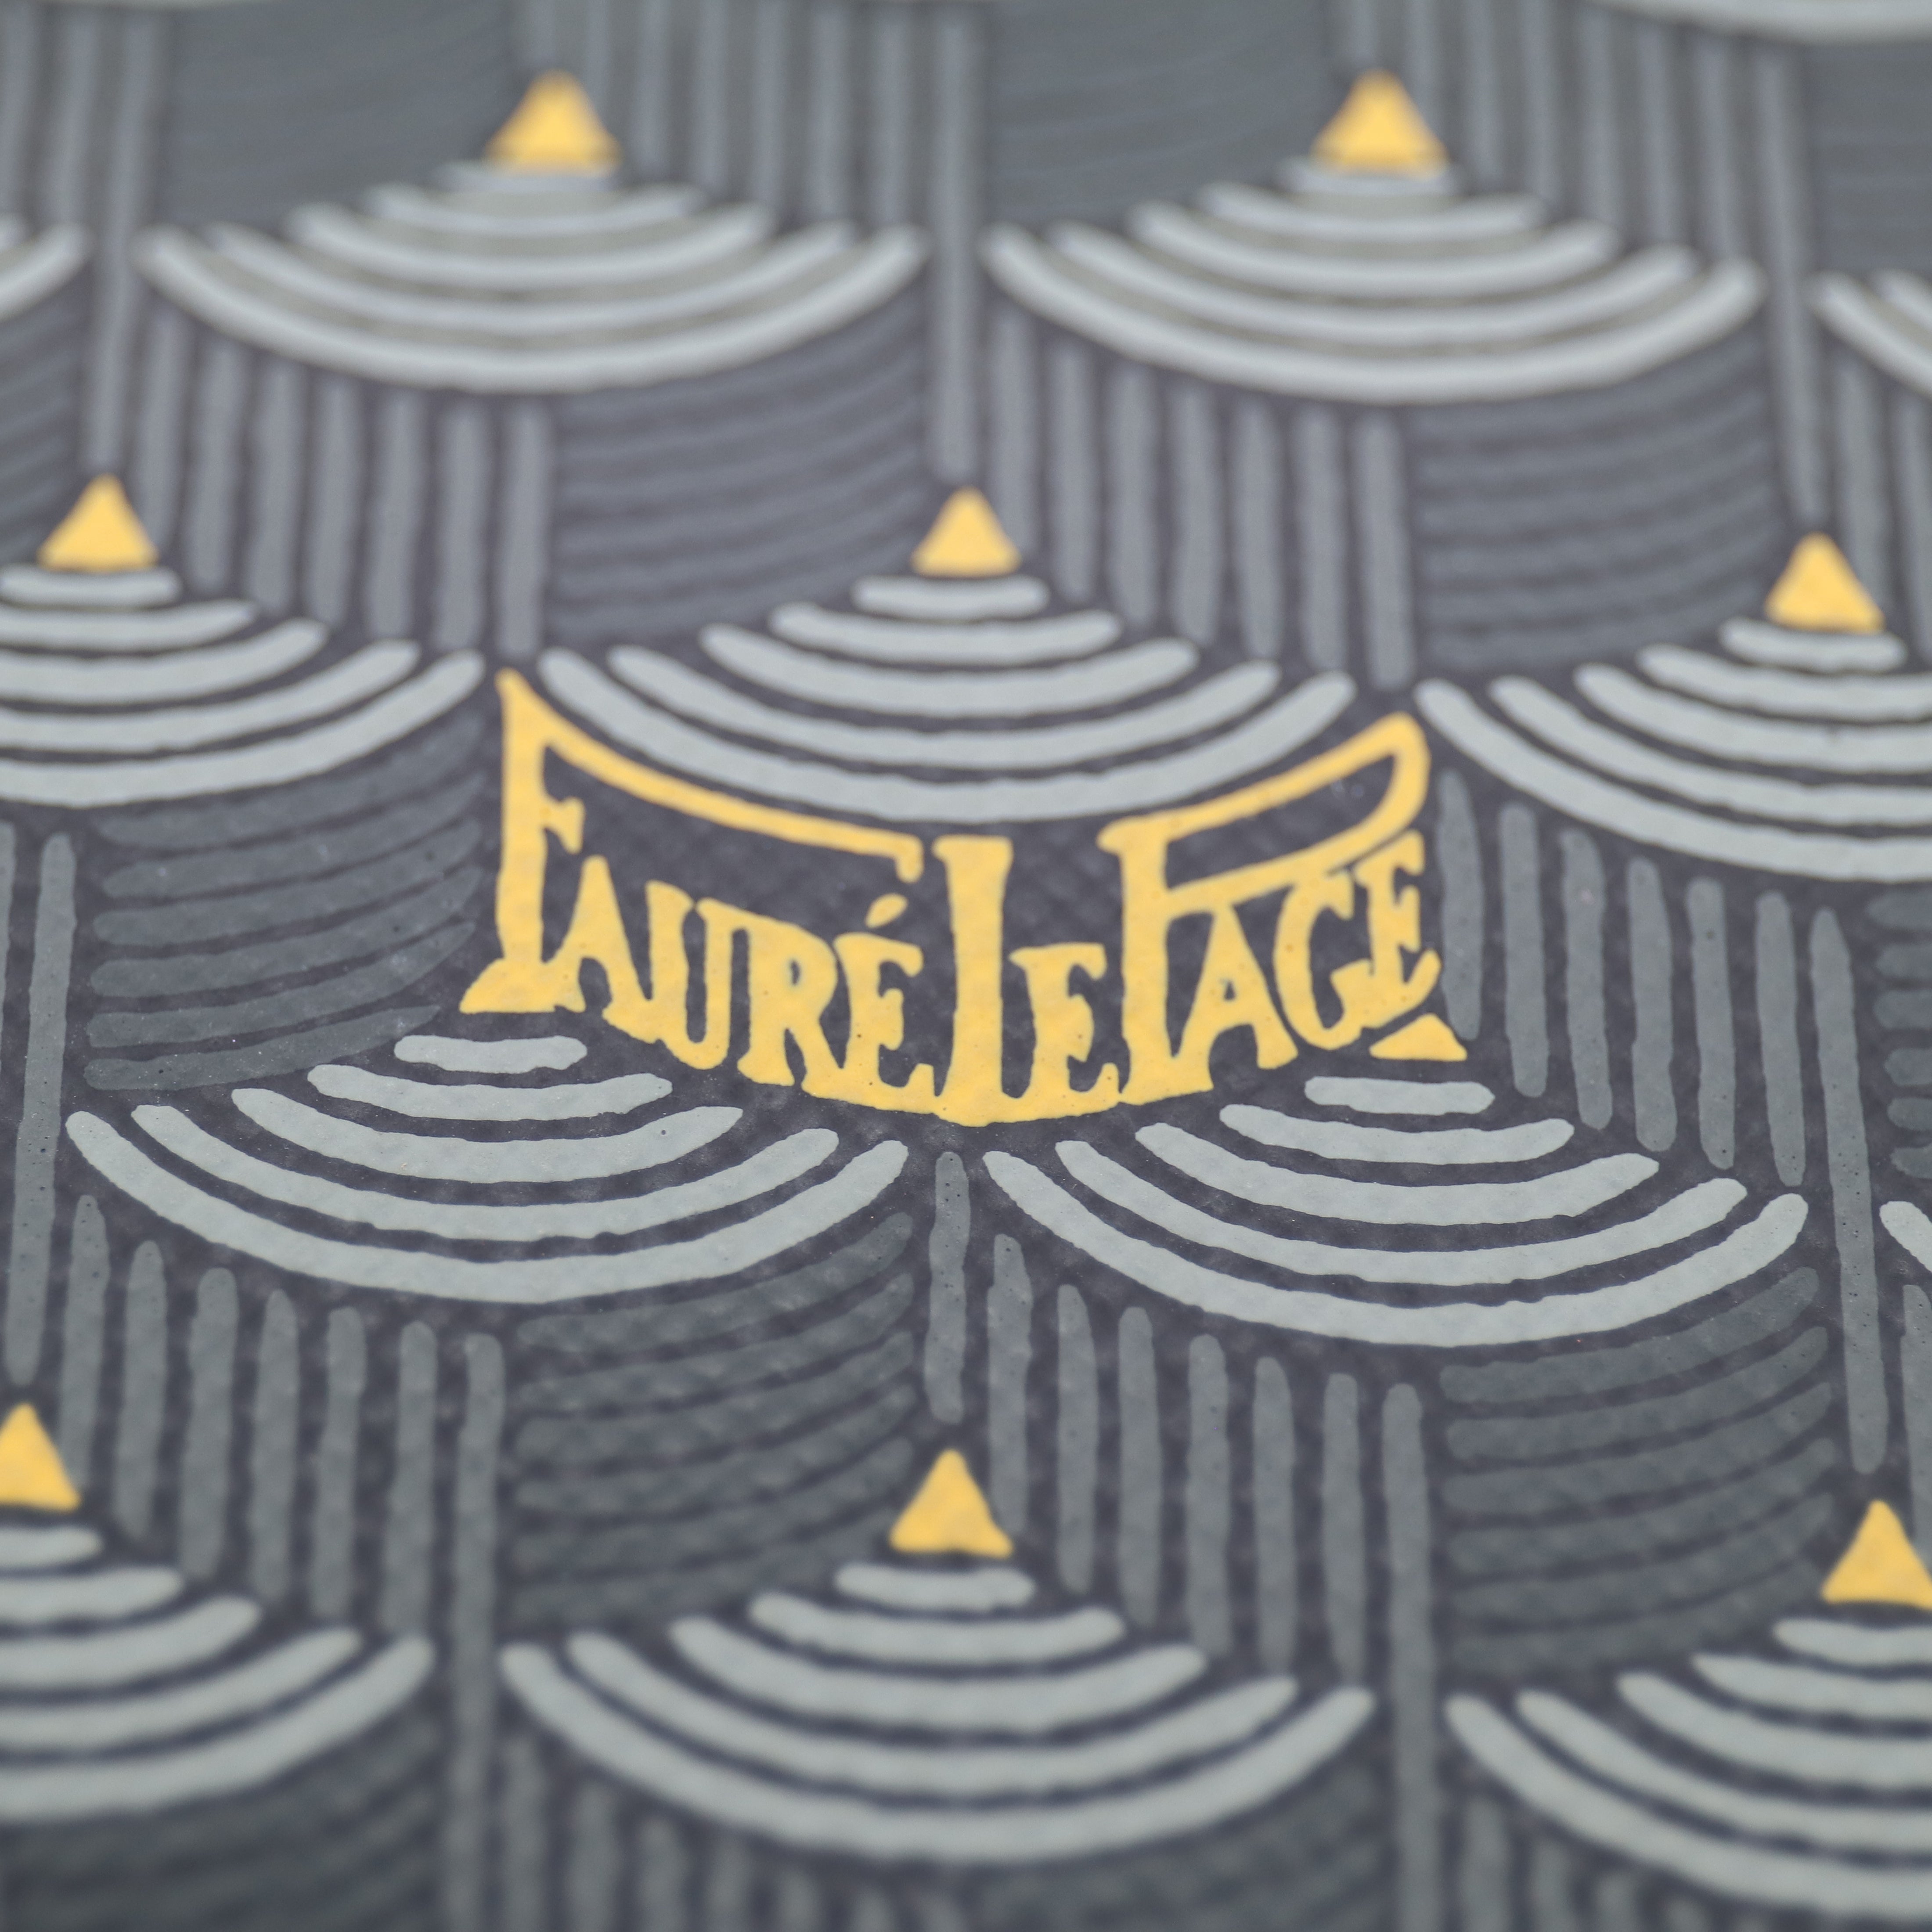 Fauré Le Page Bags Zip 29 - Steel Grey Ecailles – PROVENANCE